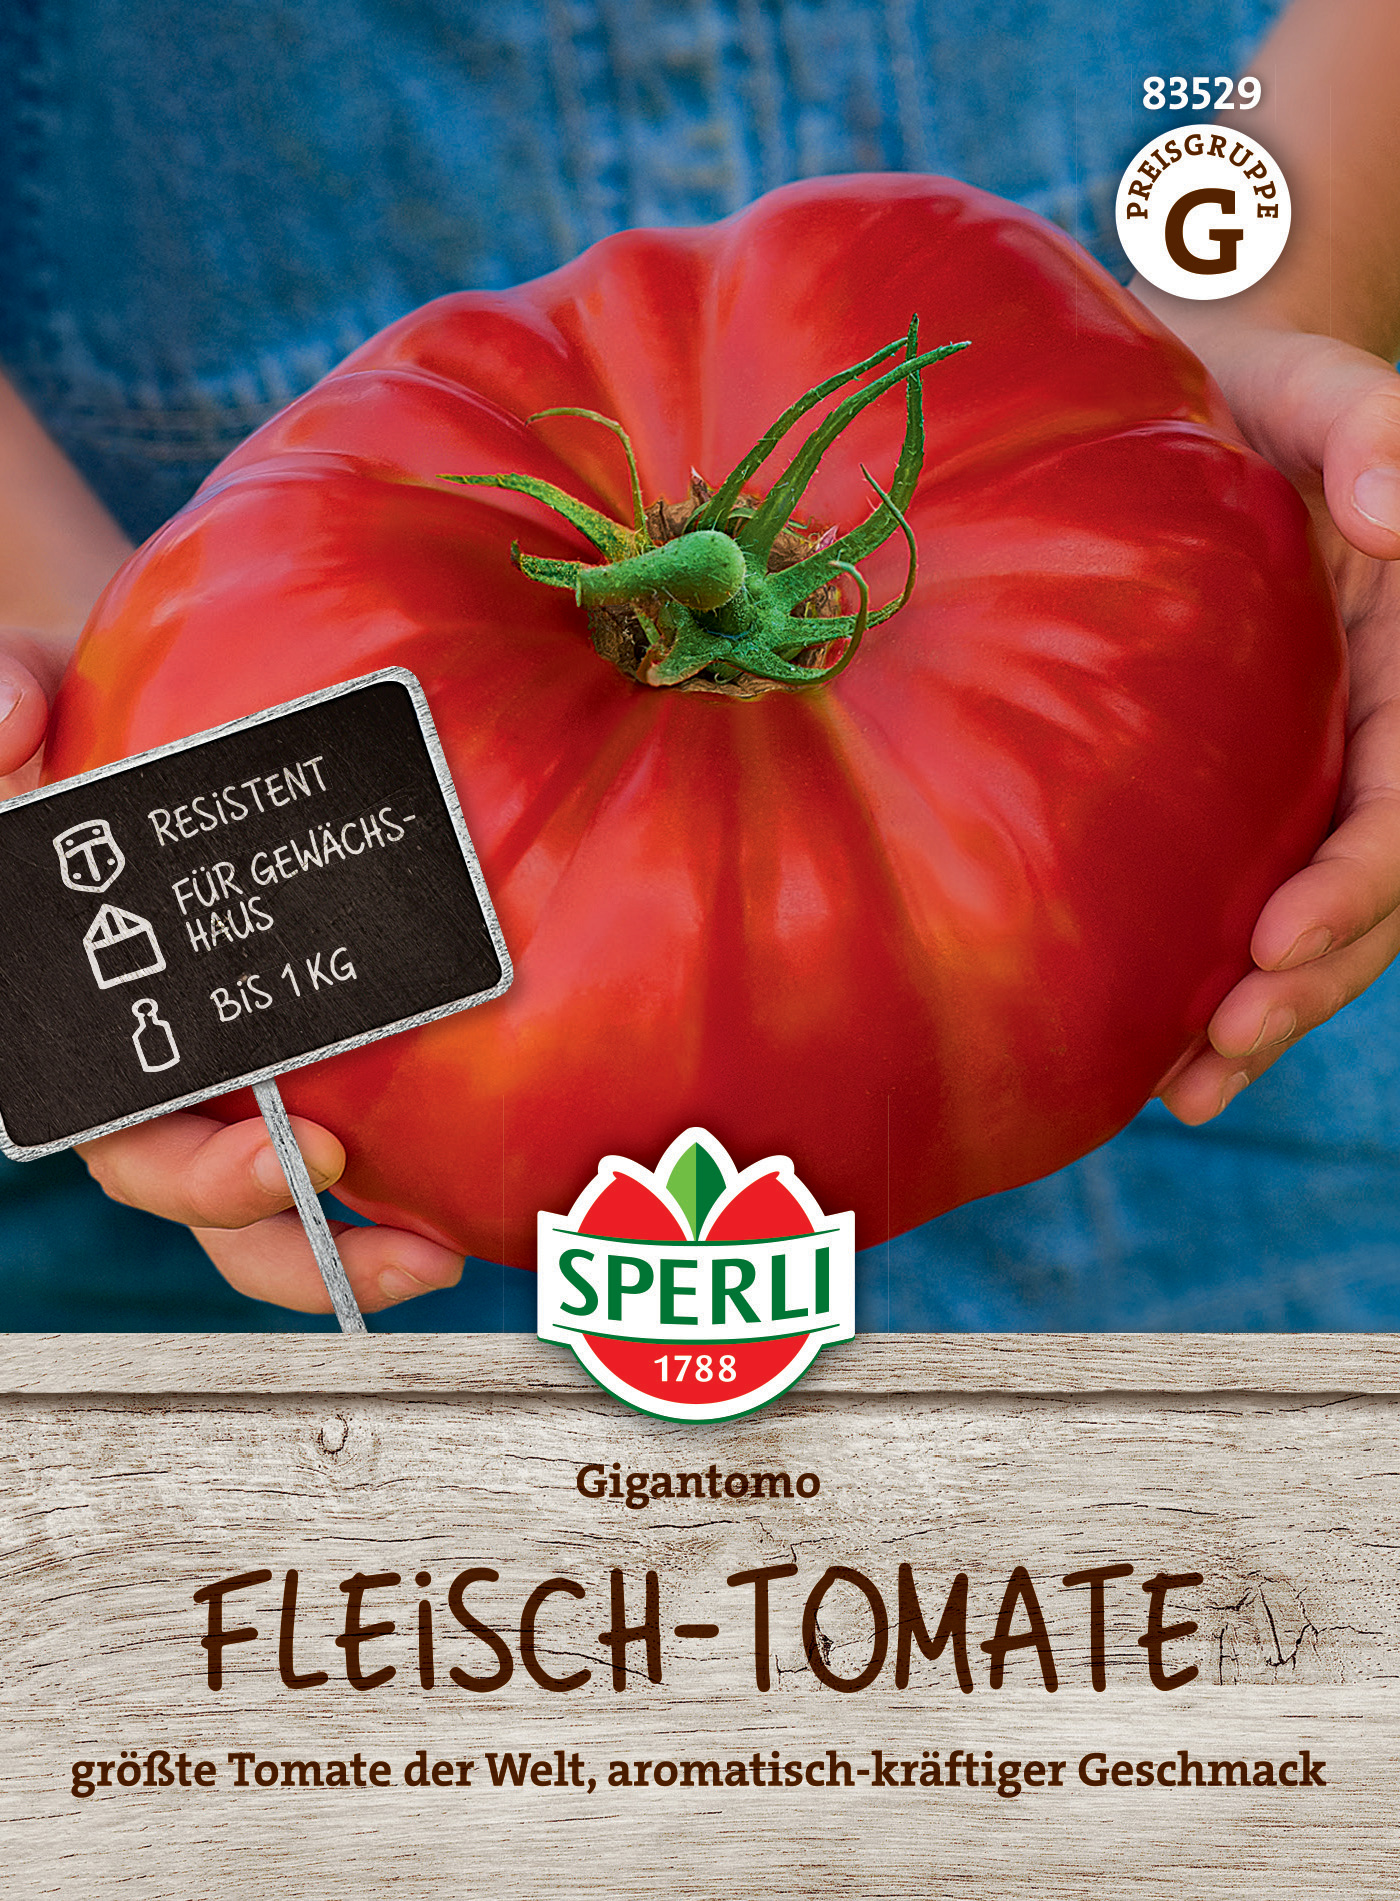 Fleisch-Tomate Gigantomo, F1